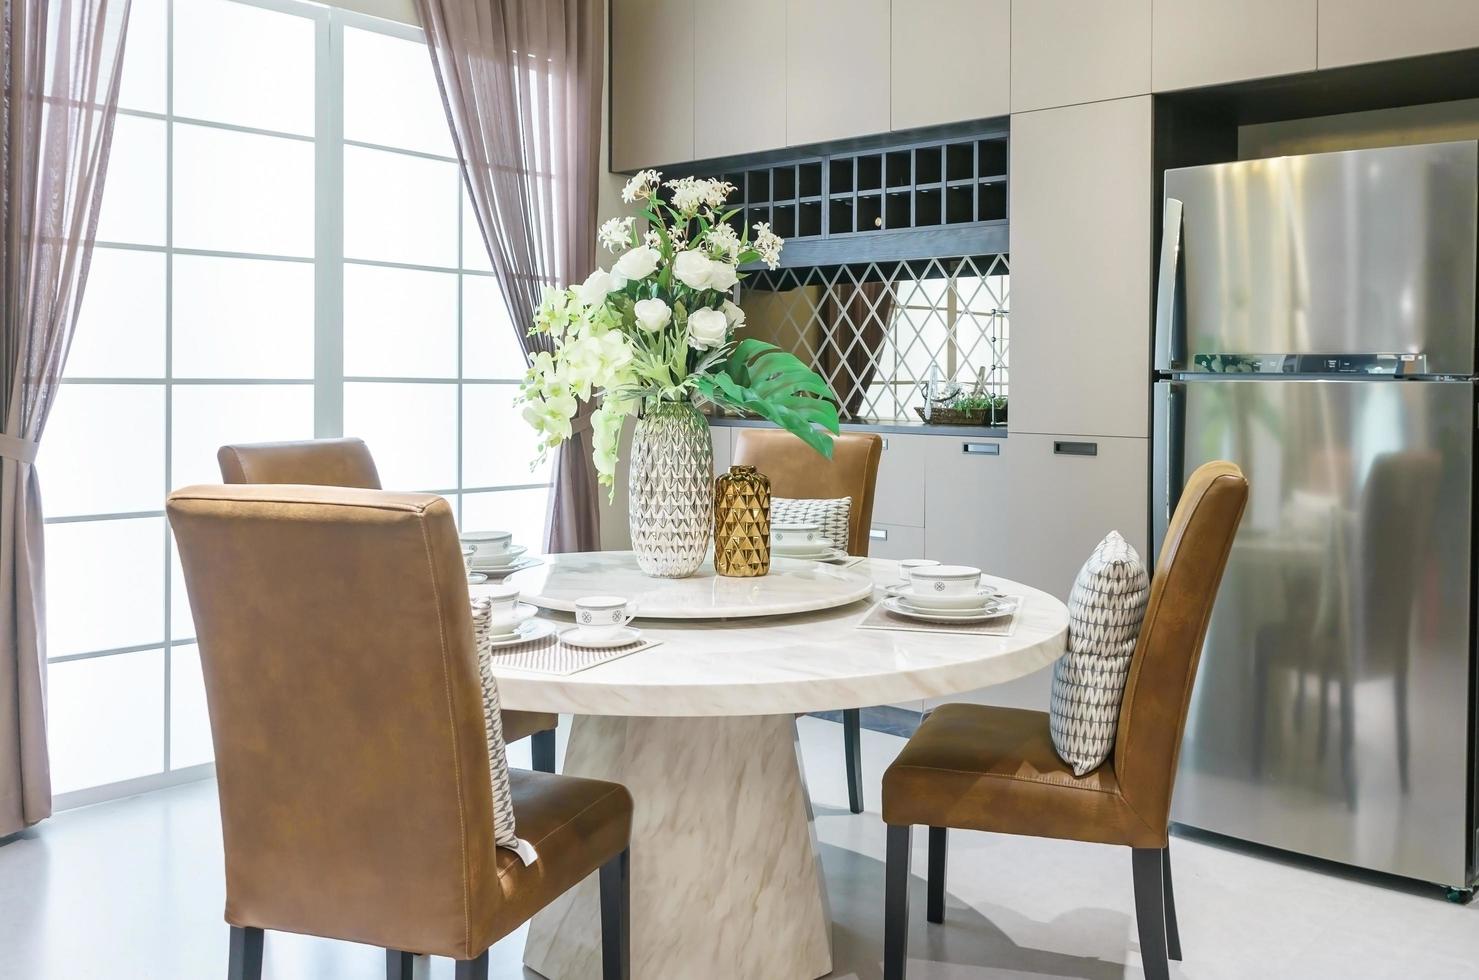 modern keramisch serviesgoed in groene kleurenschema setting op diningcc tafel in luxe huis. foto